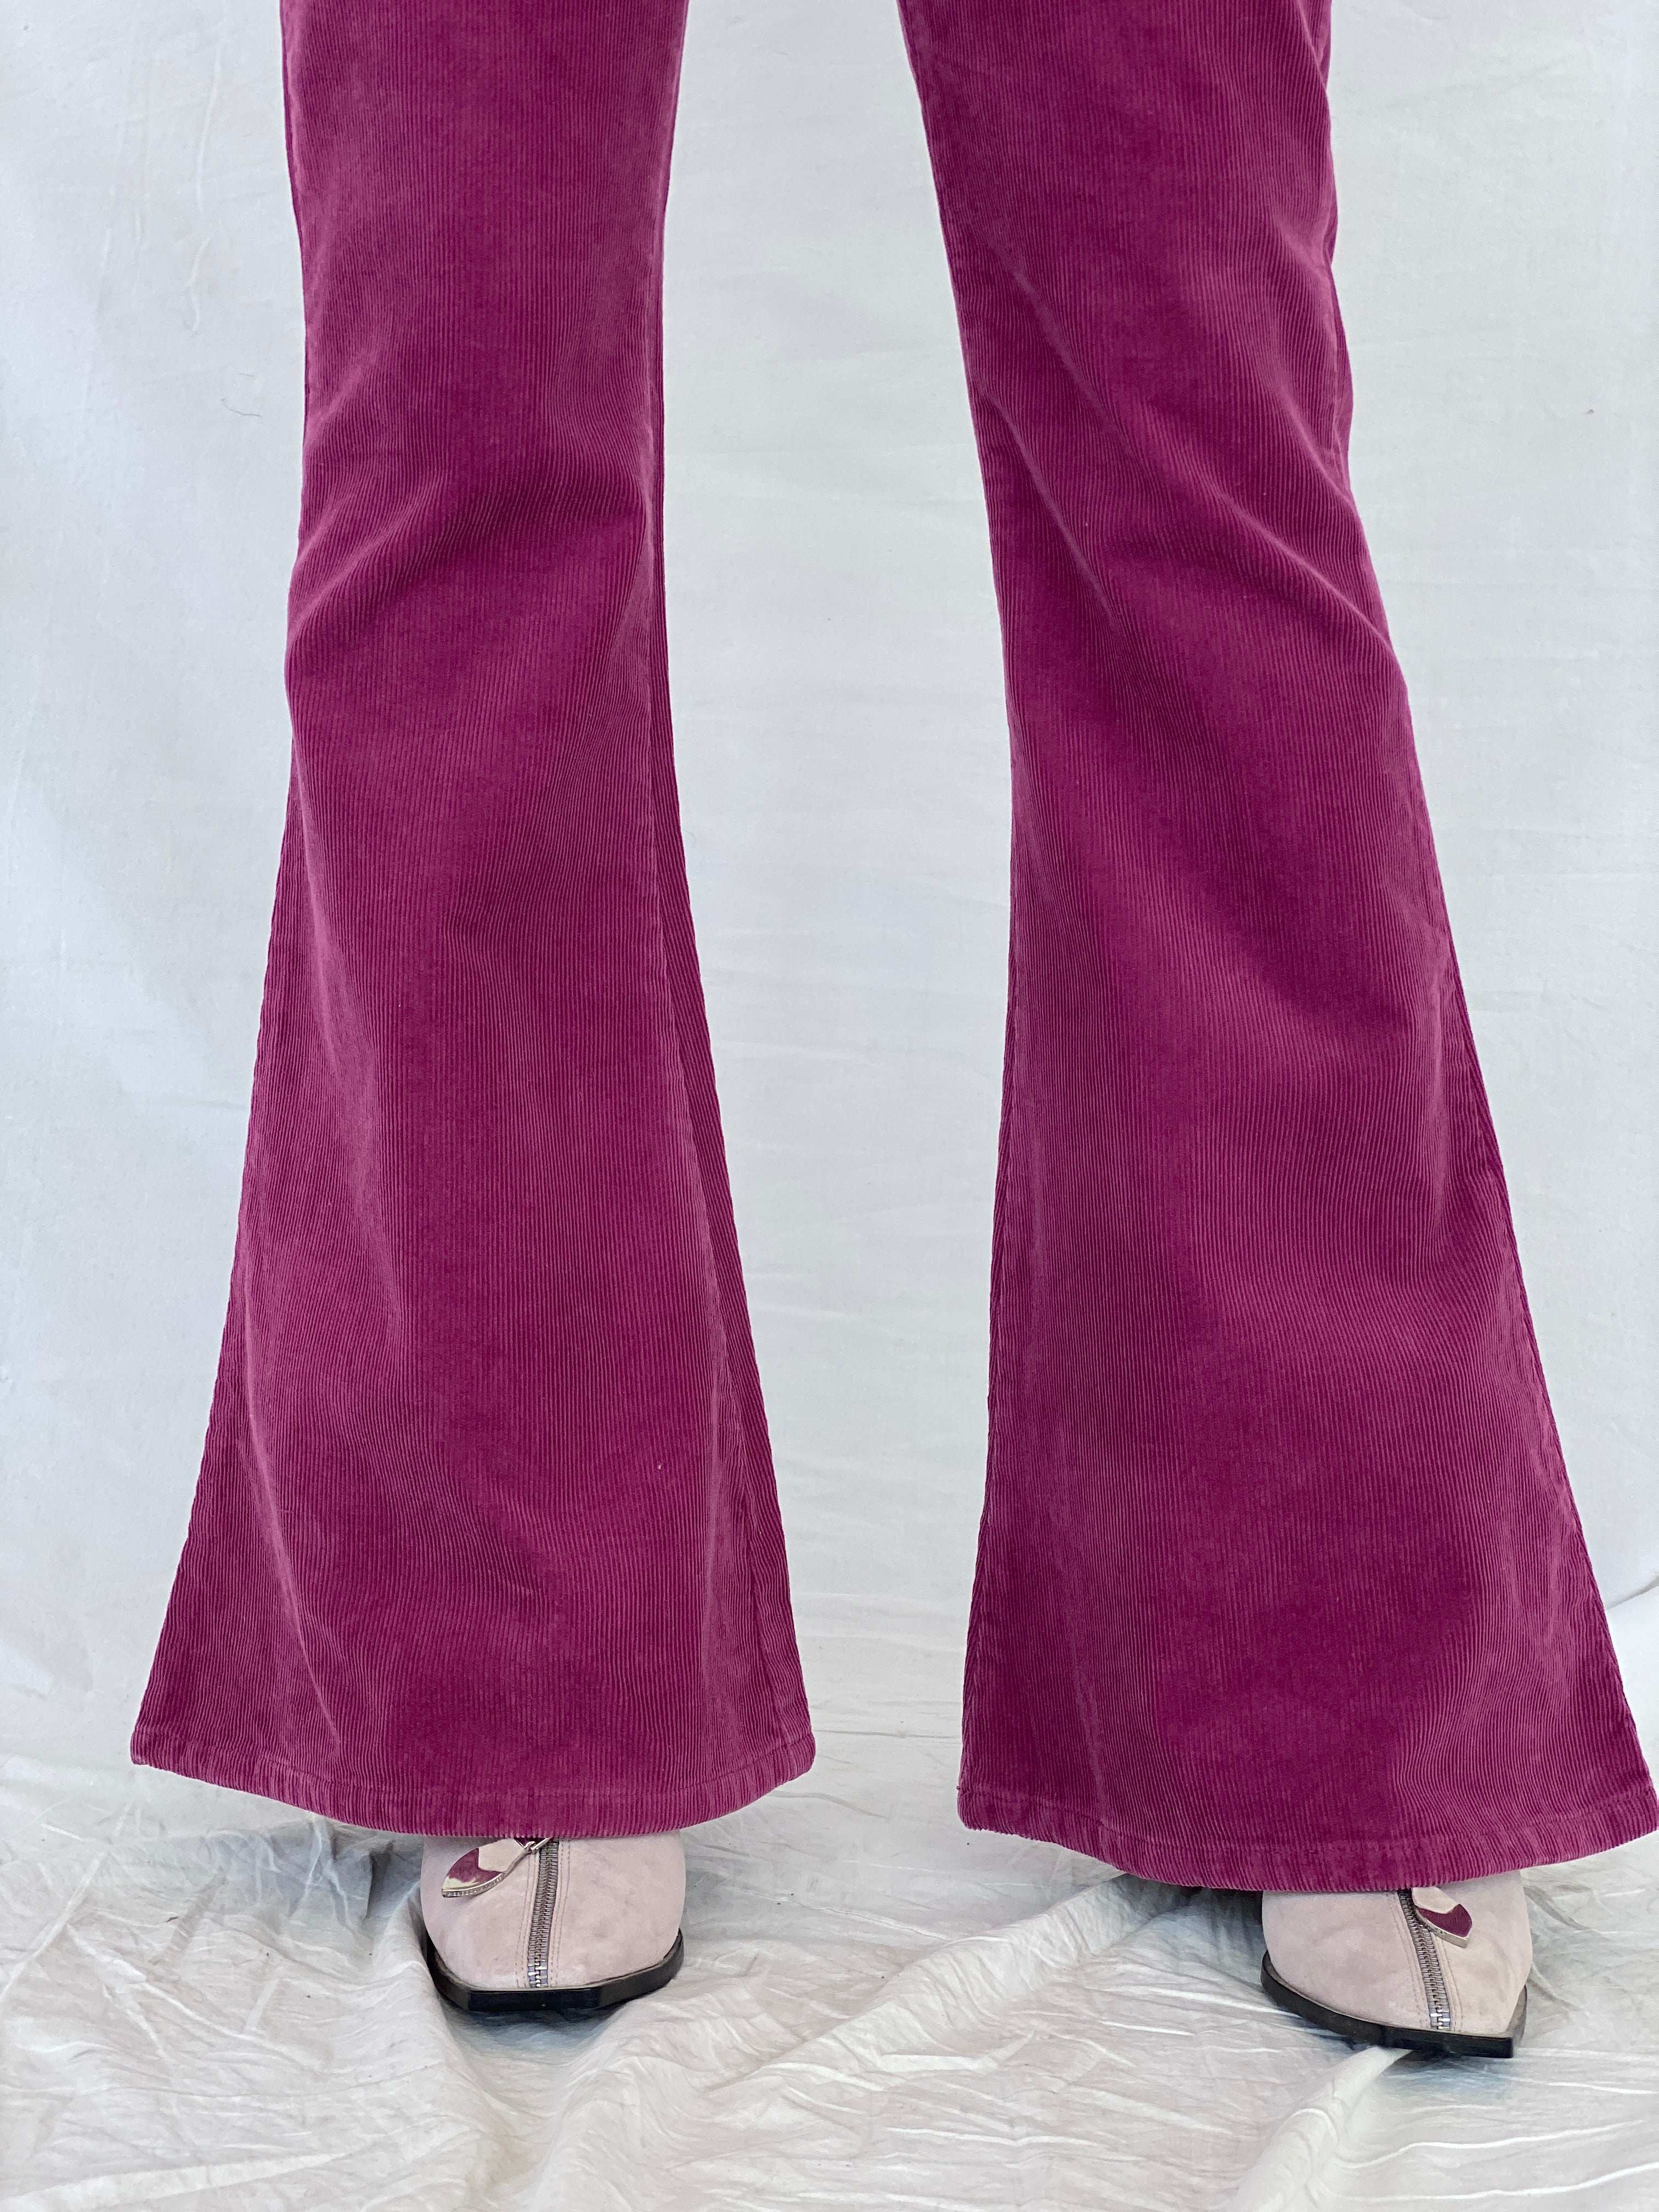 Vintage Y2K Lost Girl Flare Pants - Balagan Vintage 00s, corduroy pants, Mira, NEW IN